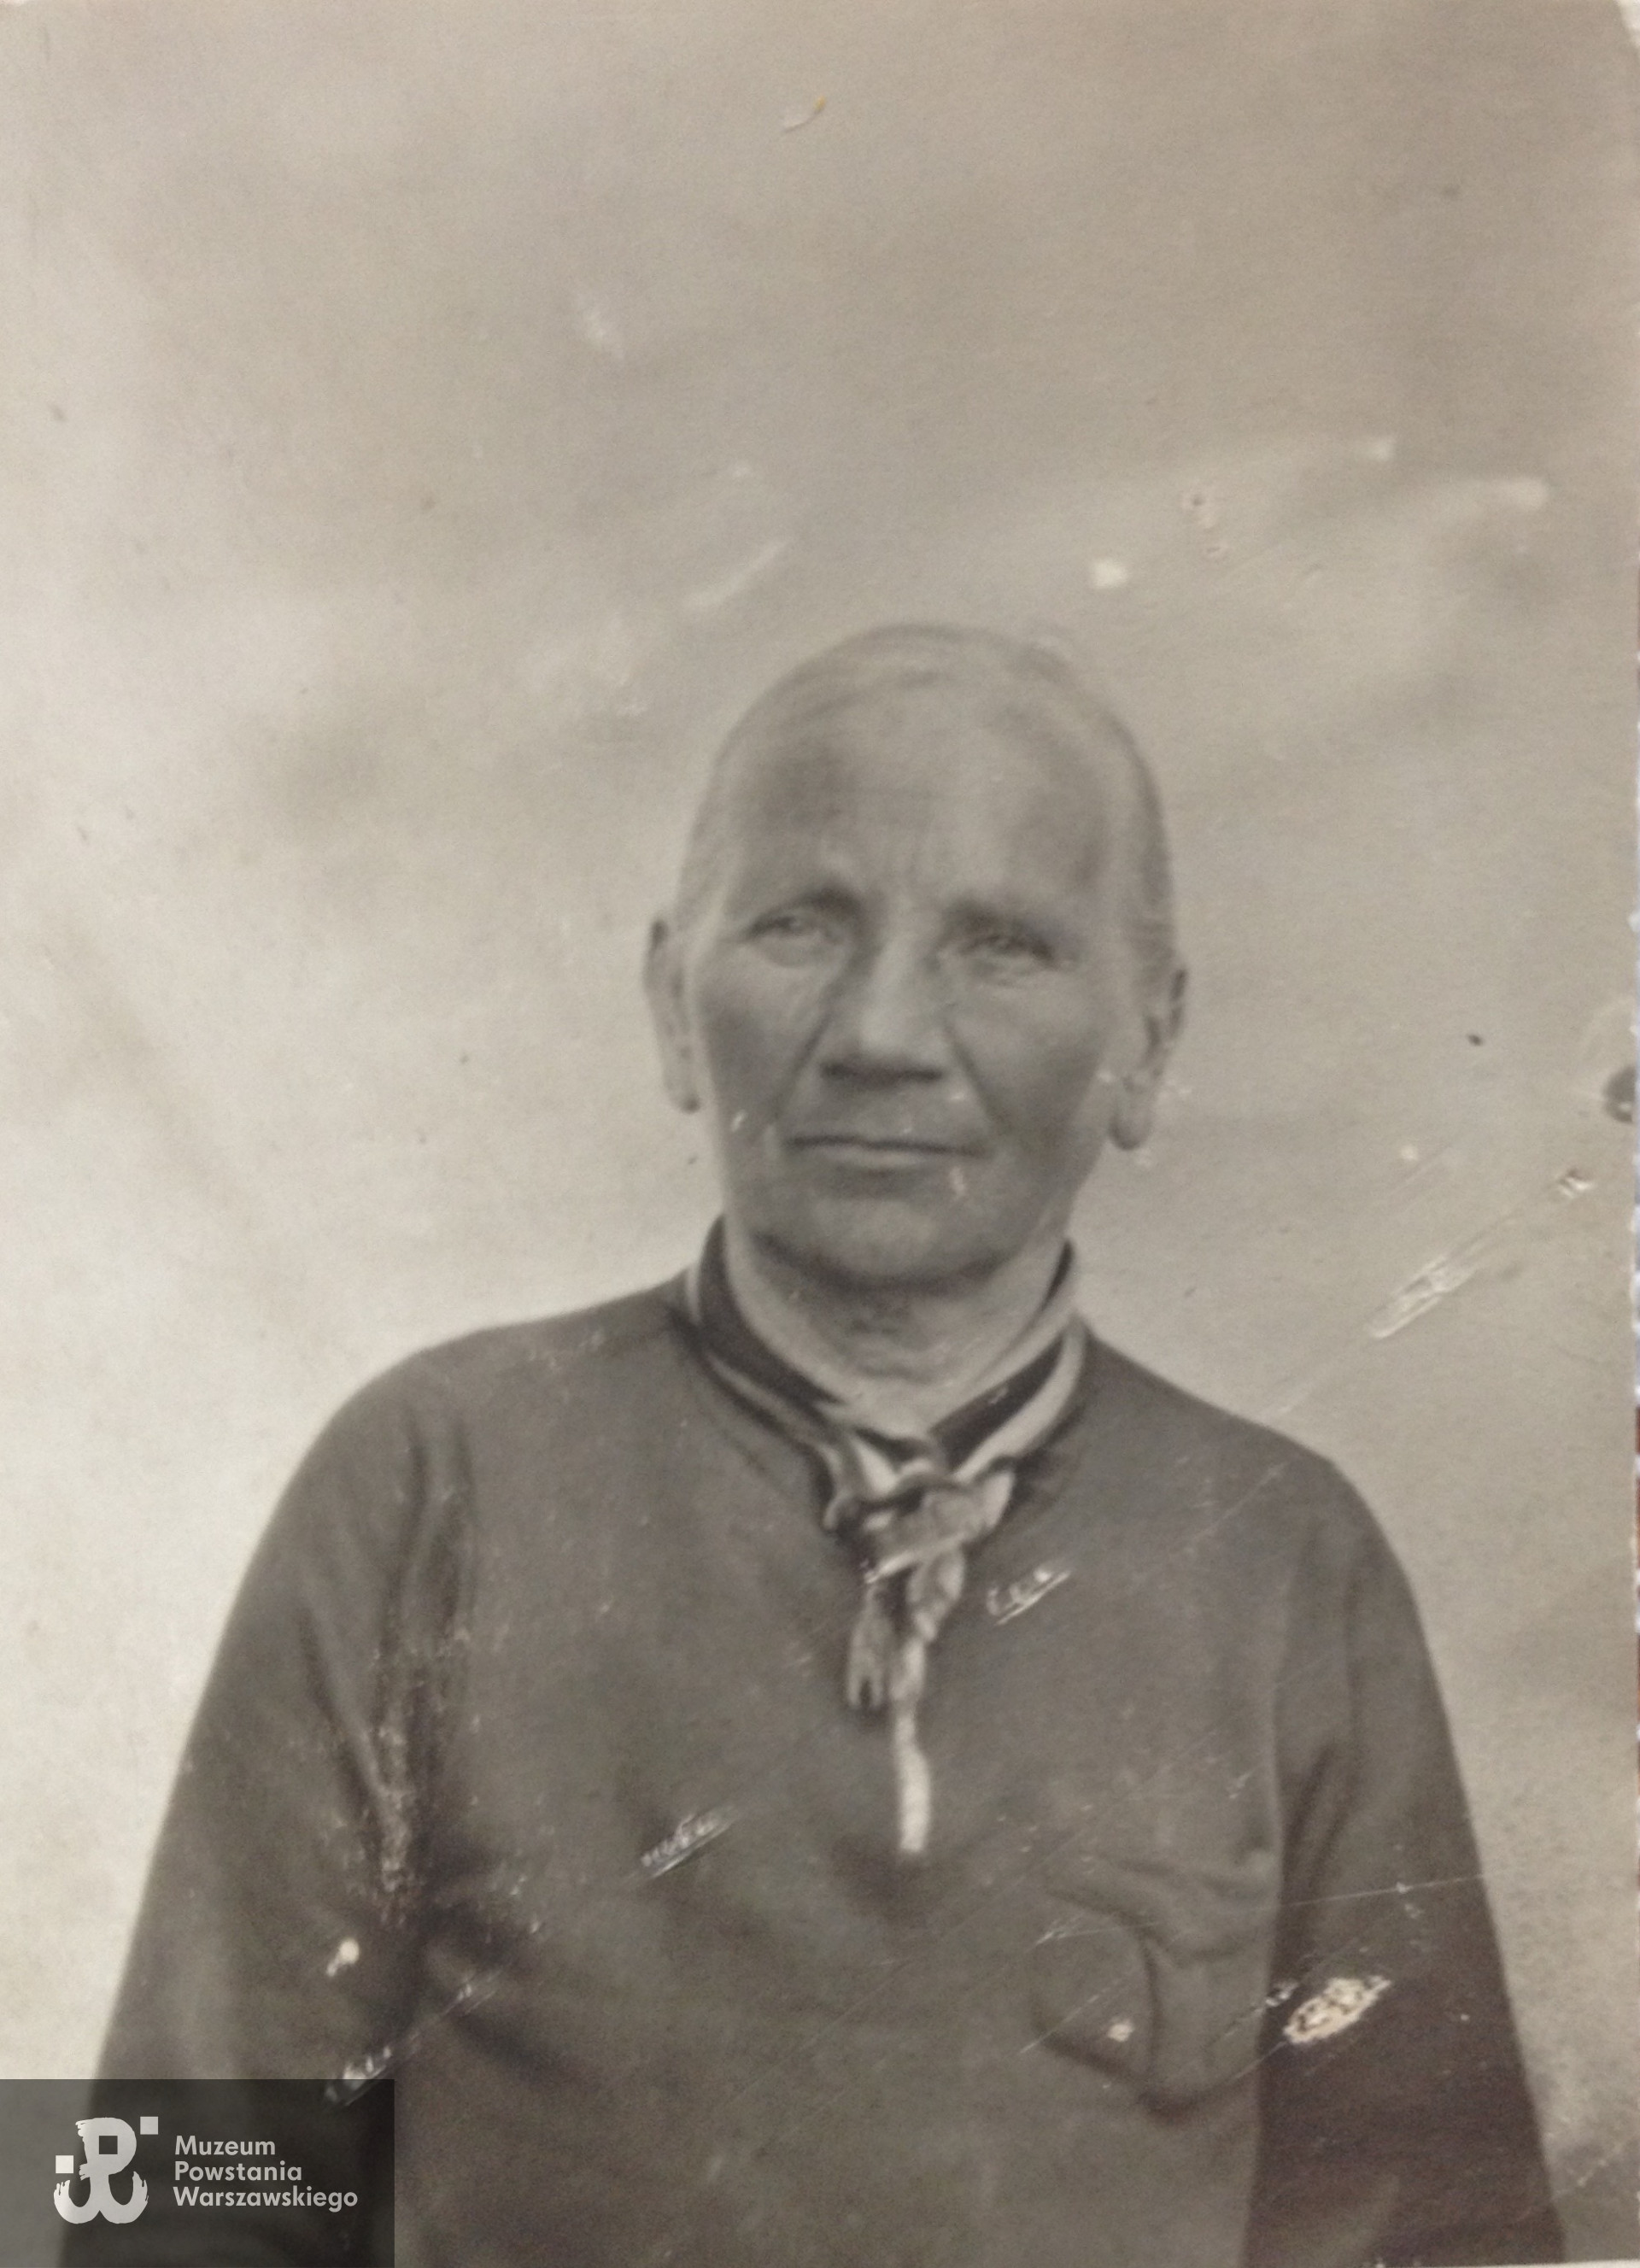 Aniela Żurawska (1882-1944), fotografię udostępniła Pani Iwona Żórawska